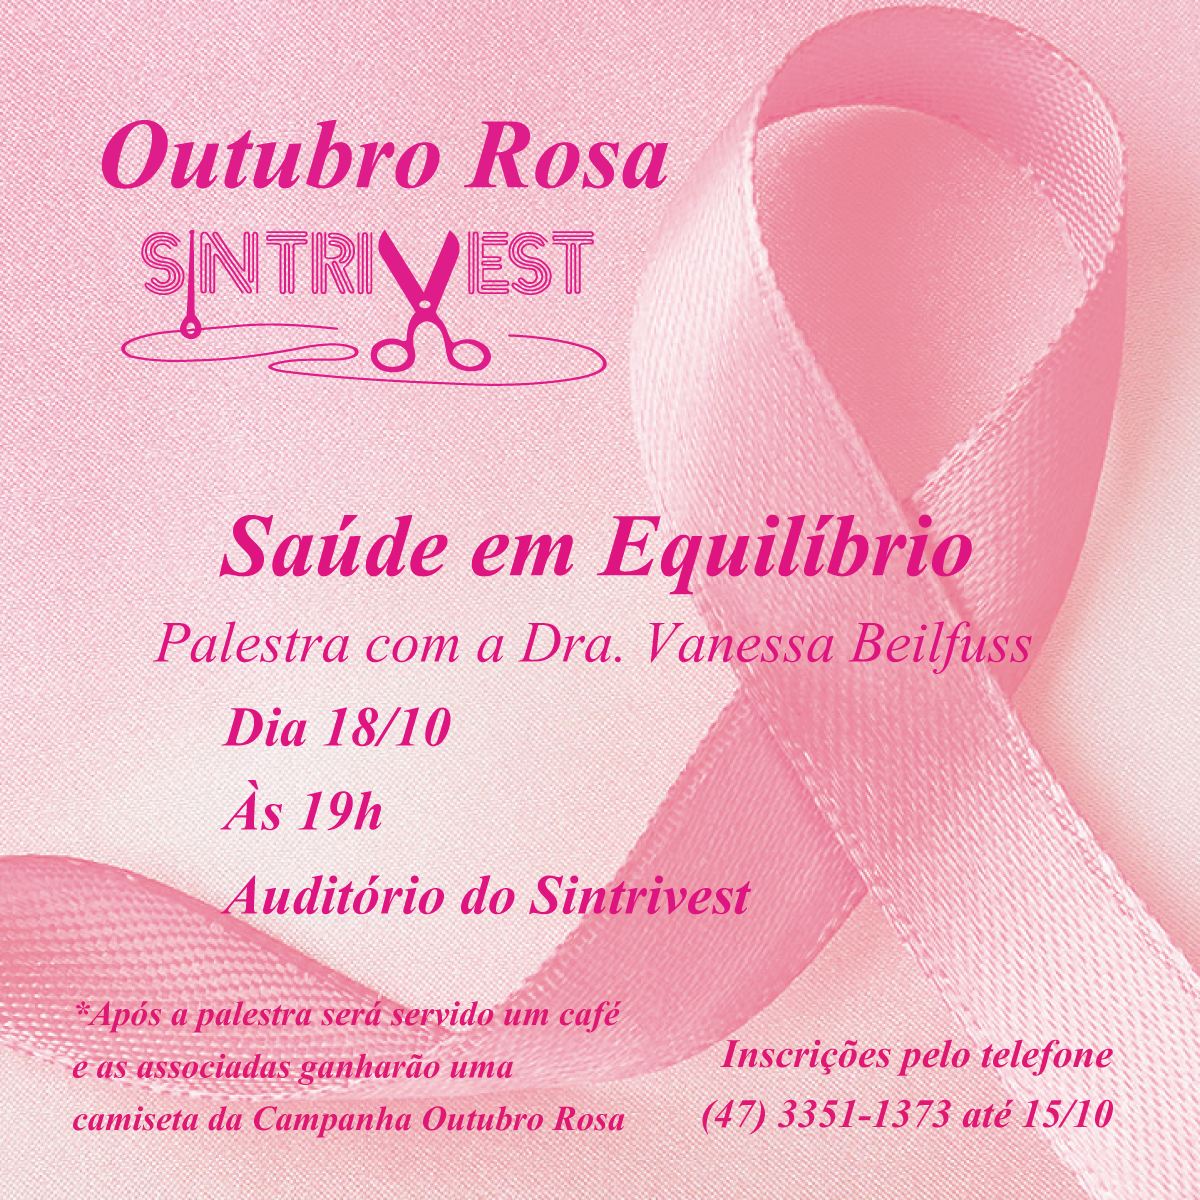 Sintrivest promove evento alusivo à campanha Outubro Rosa 